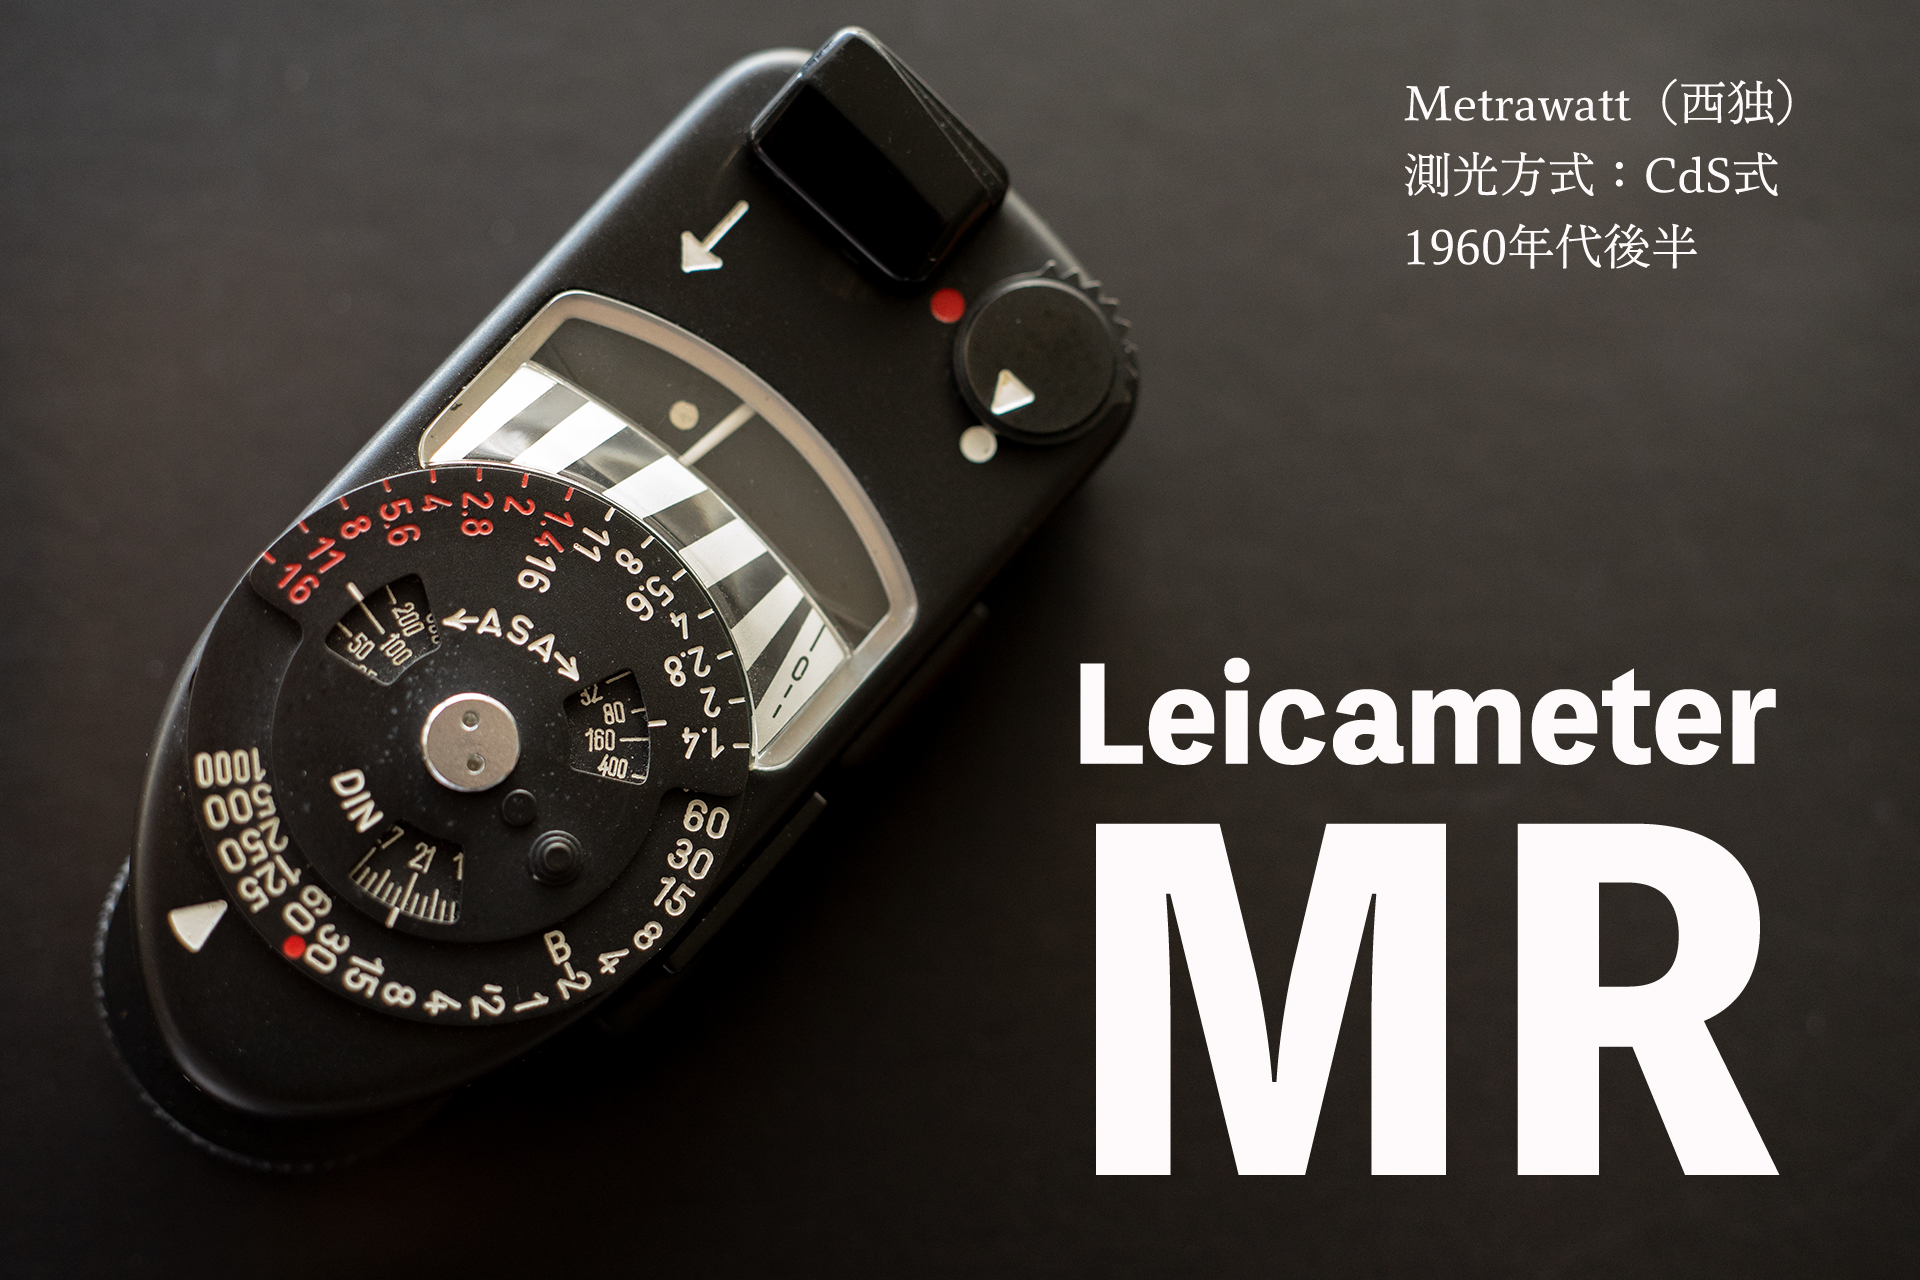 Leicameter-MR / Metrawatt（西独）